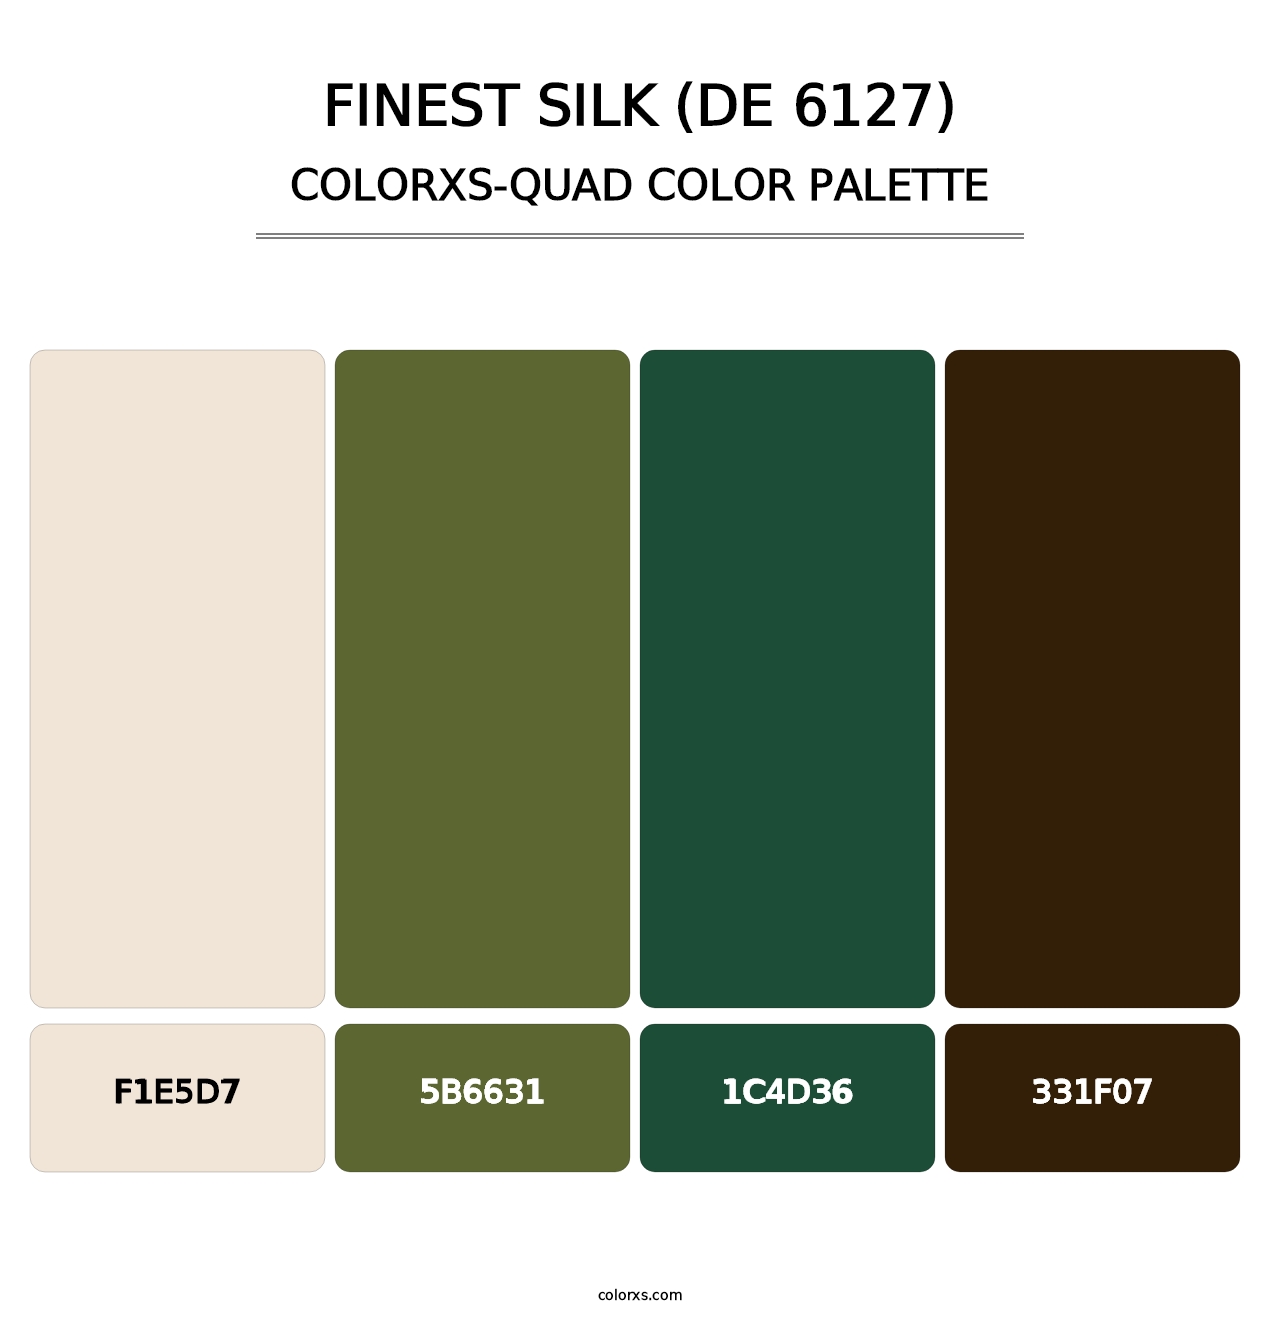 Finest Silk (DE 6127) - Colorxs Quad Palette